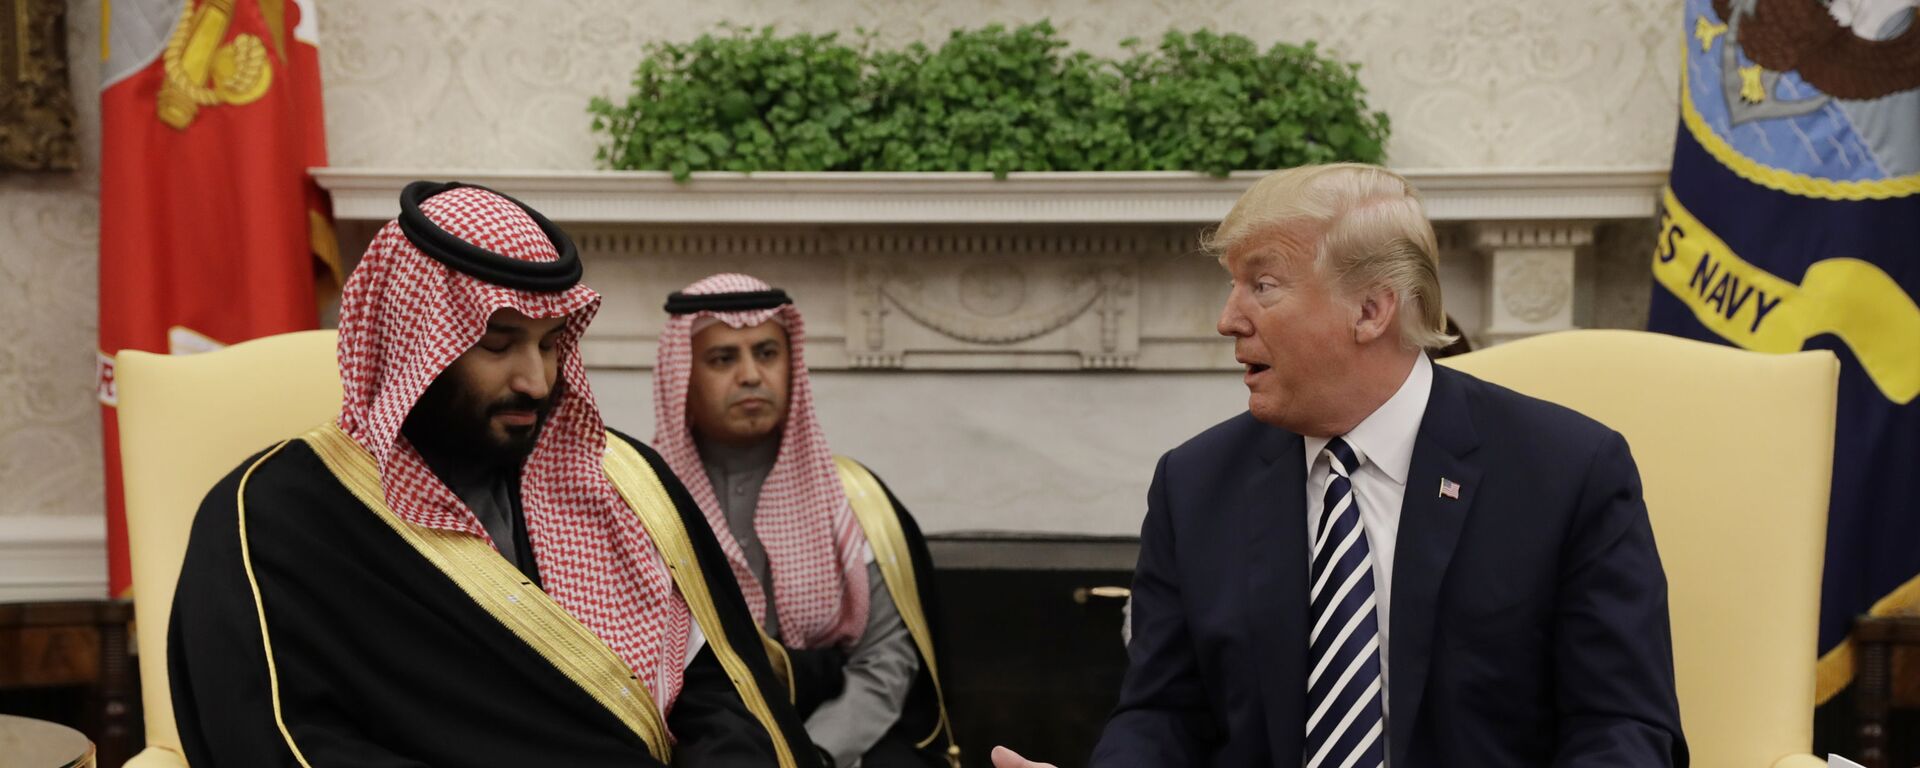 Президент США Дональд Трамп и наследный принц Саудовской Аравии Мухаммед бен Салман во время встречи в Белом доме в Вашингтоне - Sputnik Ўзбекистон, 1920, 06.04.2020